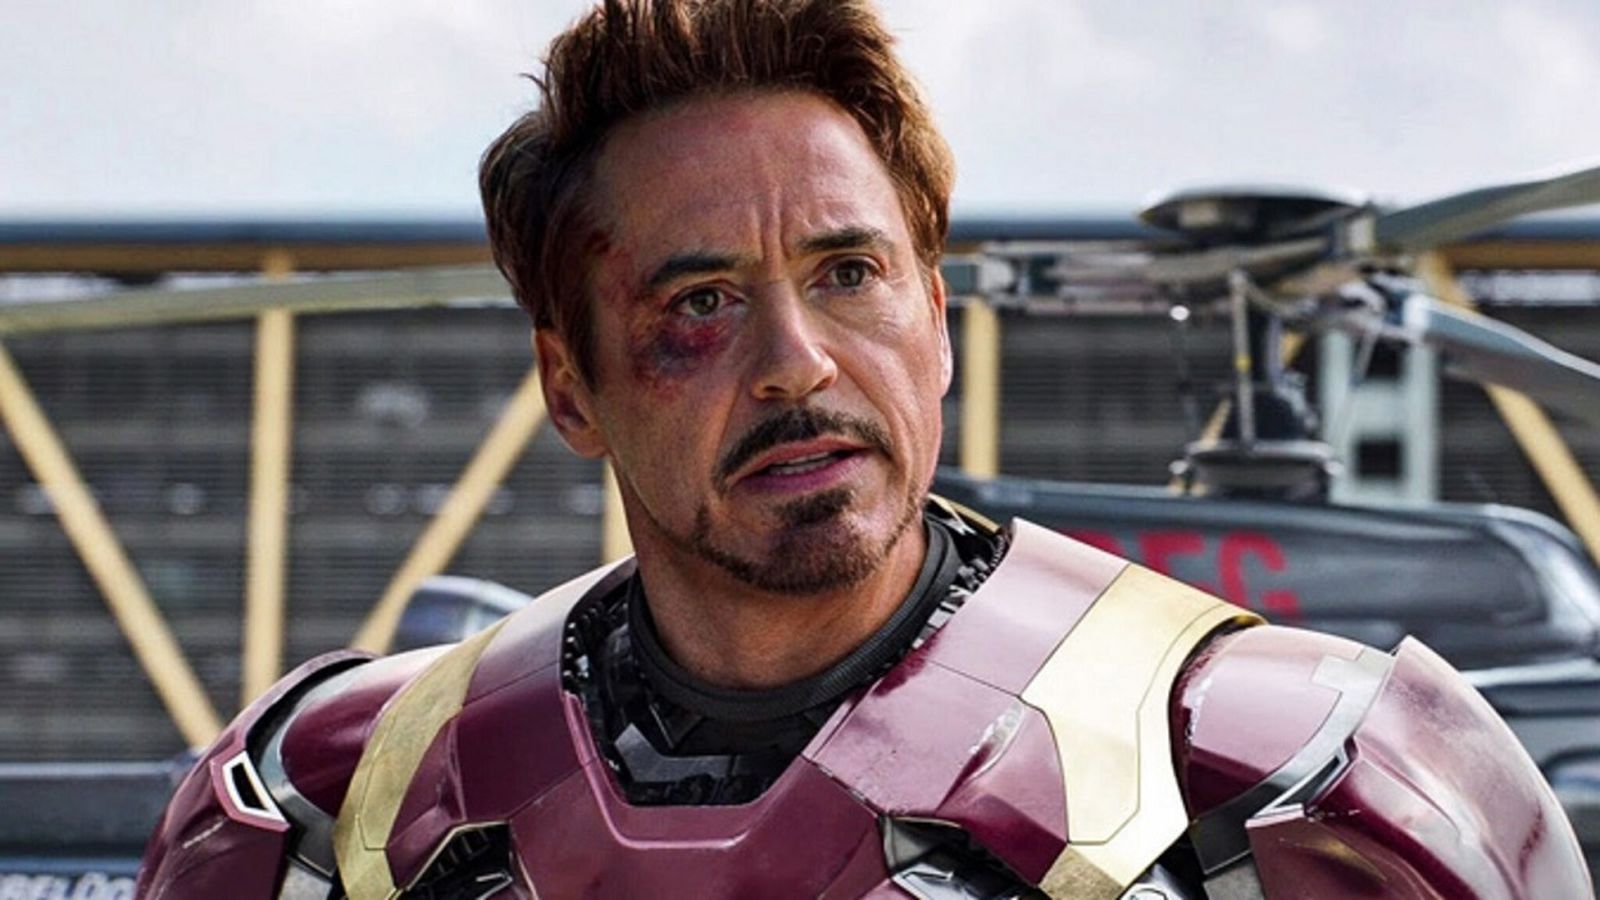 Iron Man, Robert Downey Jr. improvvisava ogni giorno sul set: 'Non dirò queste battute di mer*a'